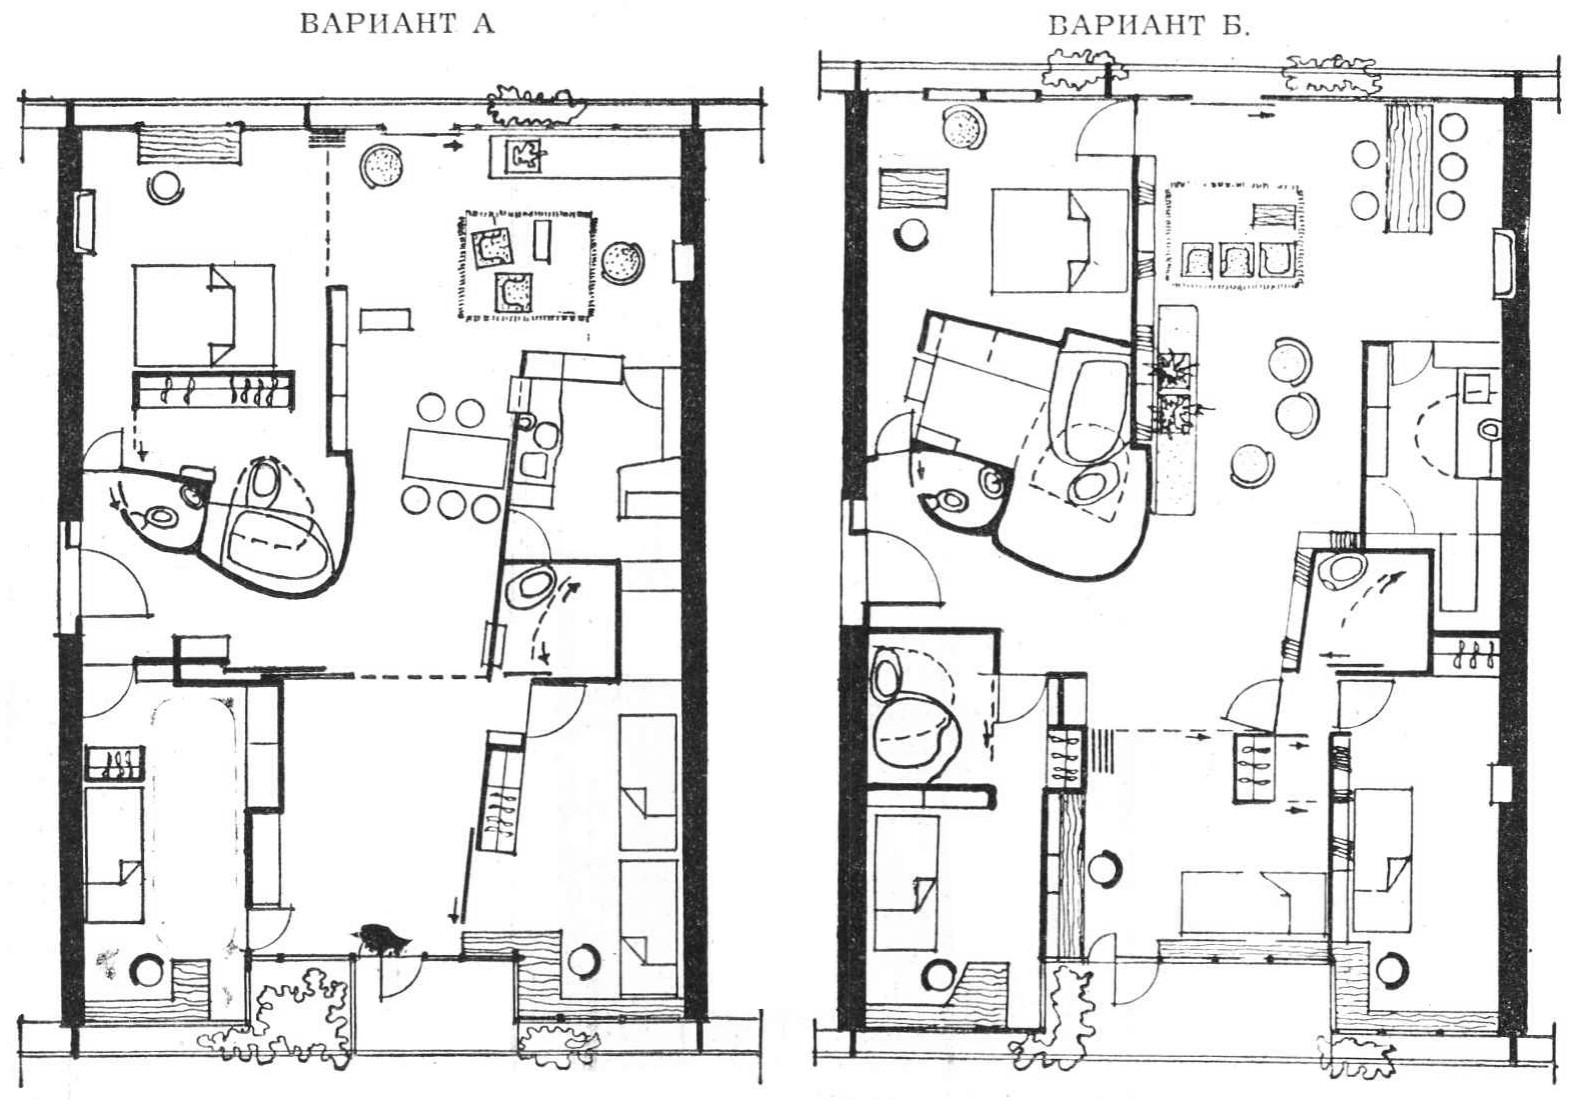 Рис. 2. Планы квартиры с полностью свободной планировкой. (Проект группы французских архитекторов).